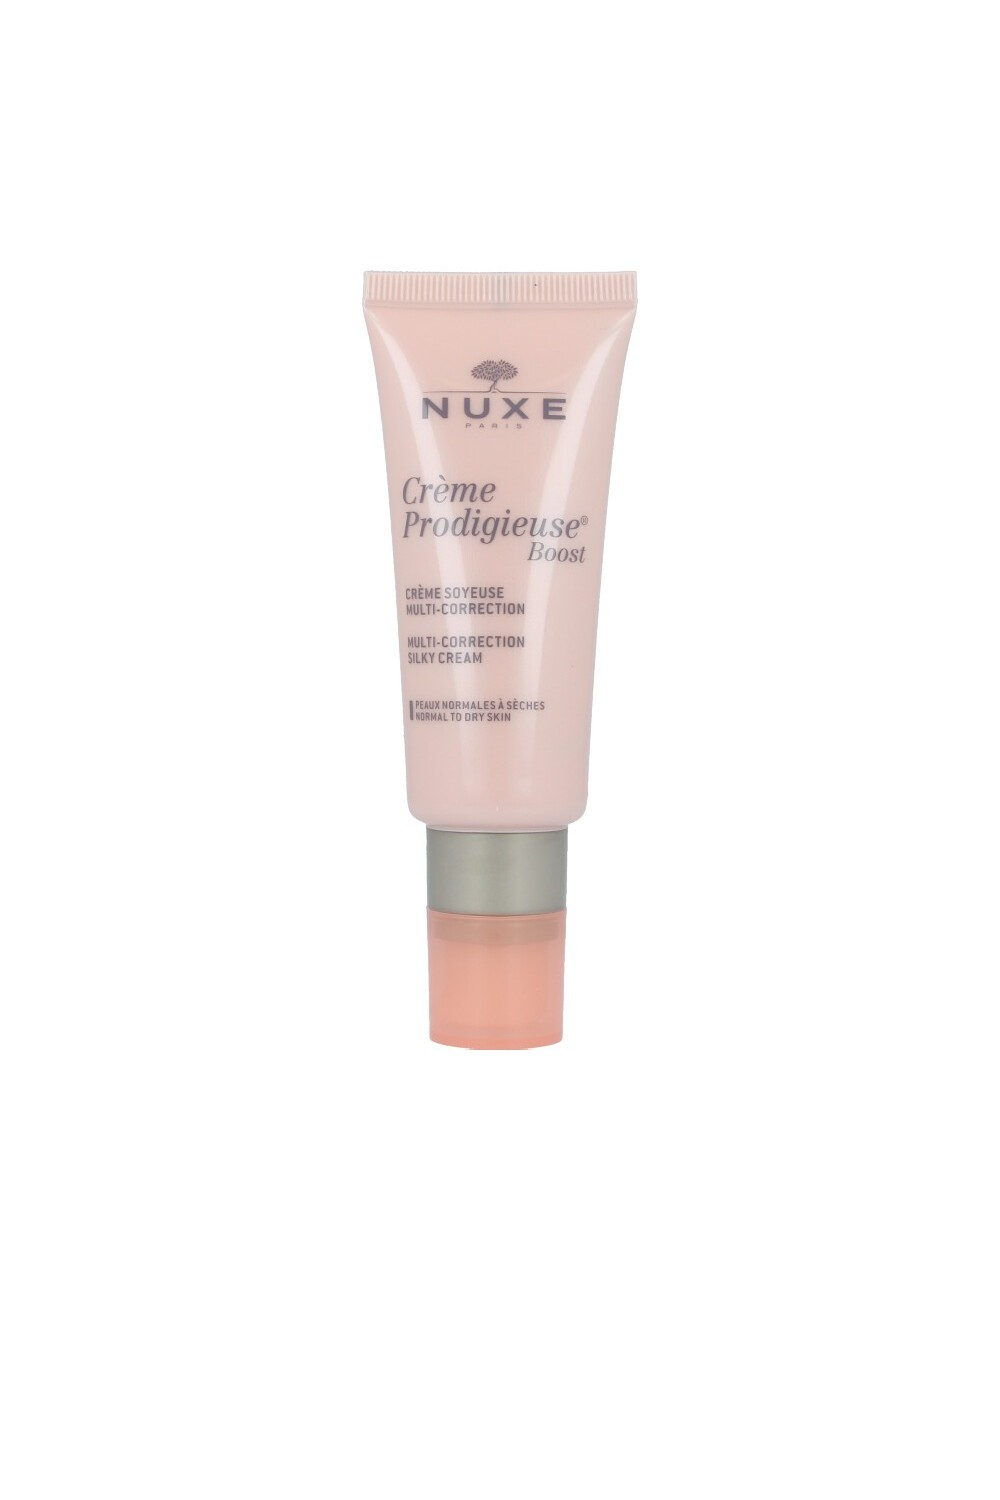 Nuxe Crème Prodigieuse Boost Multi-Correction Silky Cream 40ml